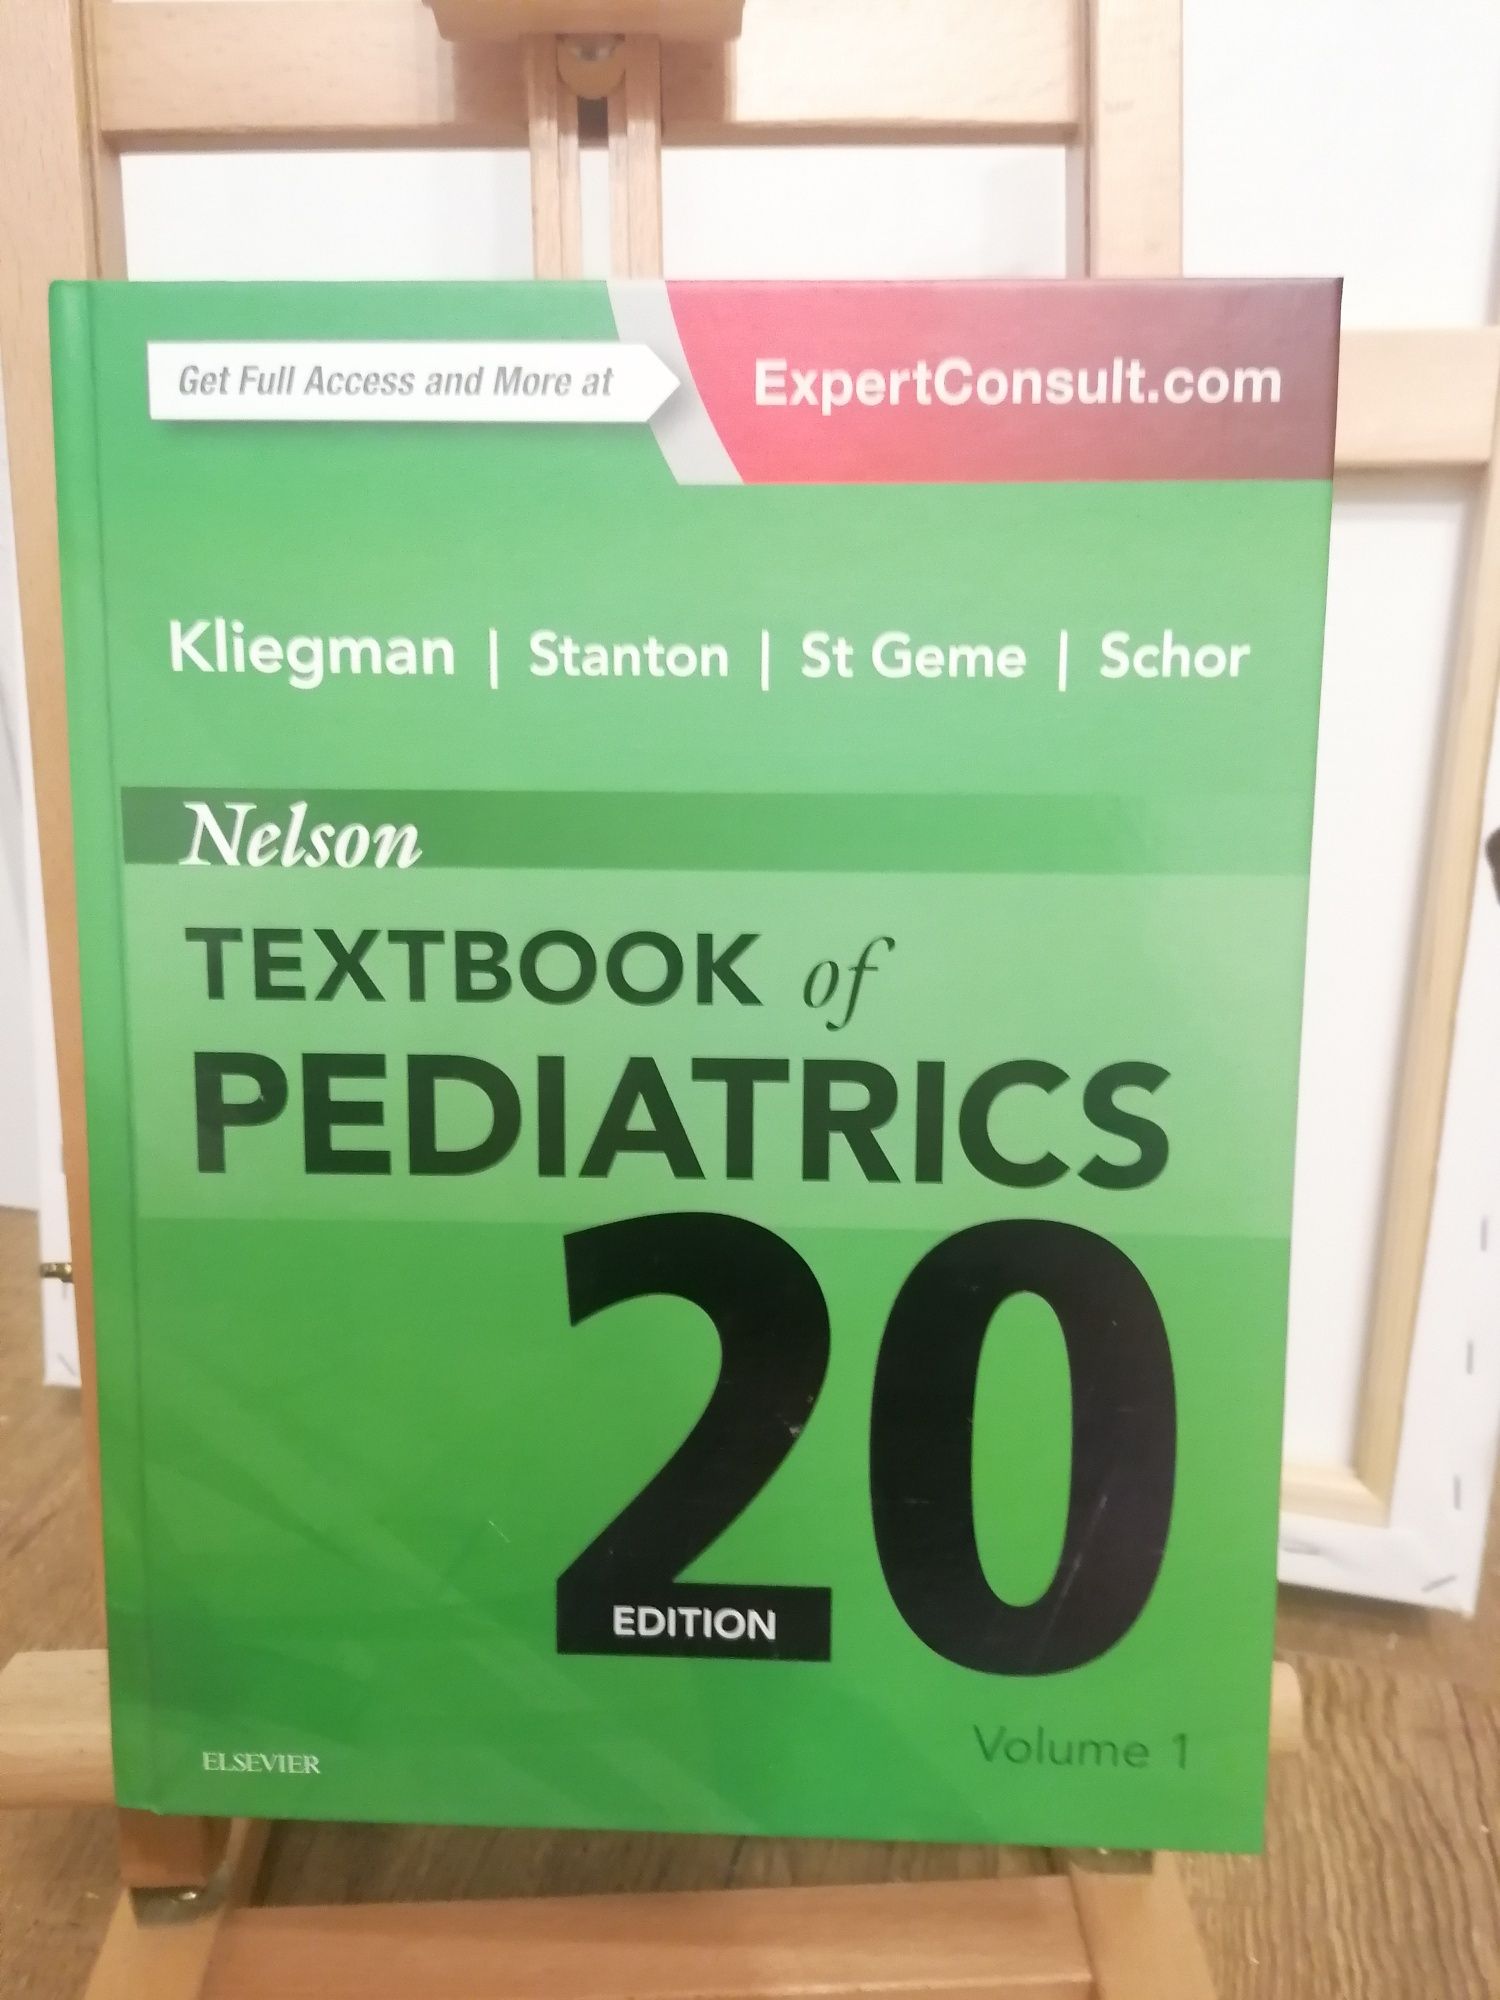 Textbook of Pediatric 20 EDITION-Volum 1,2